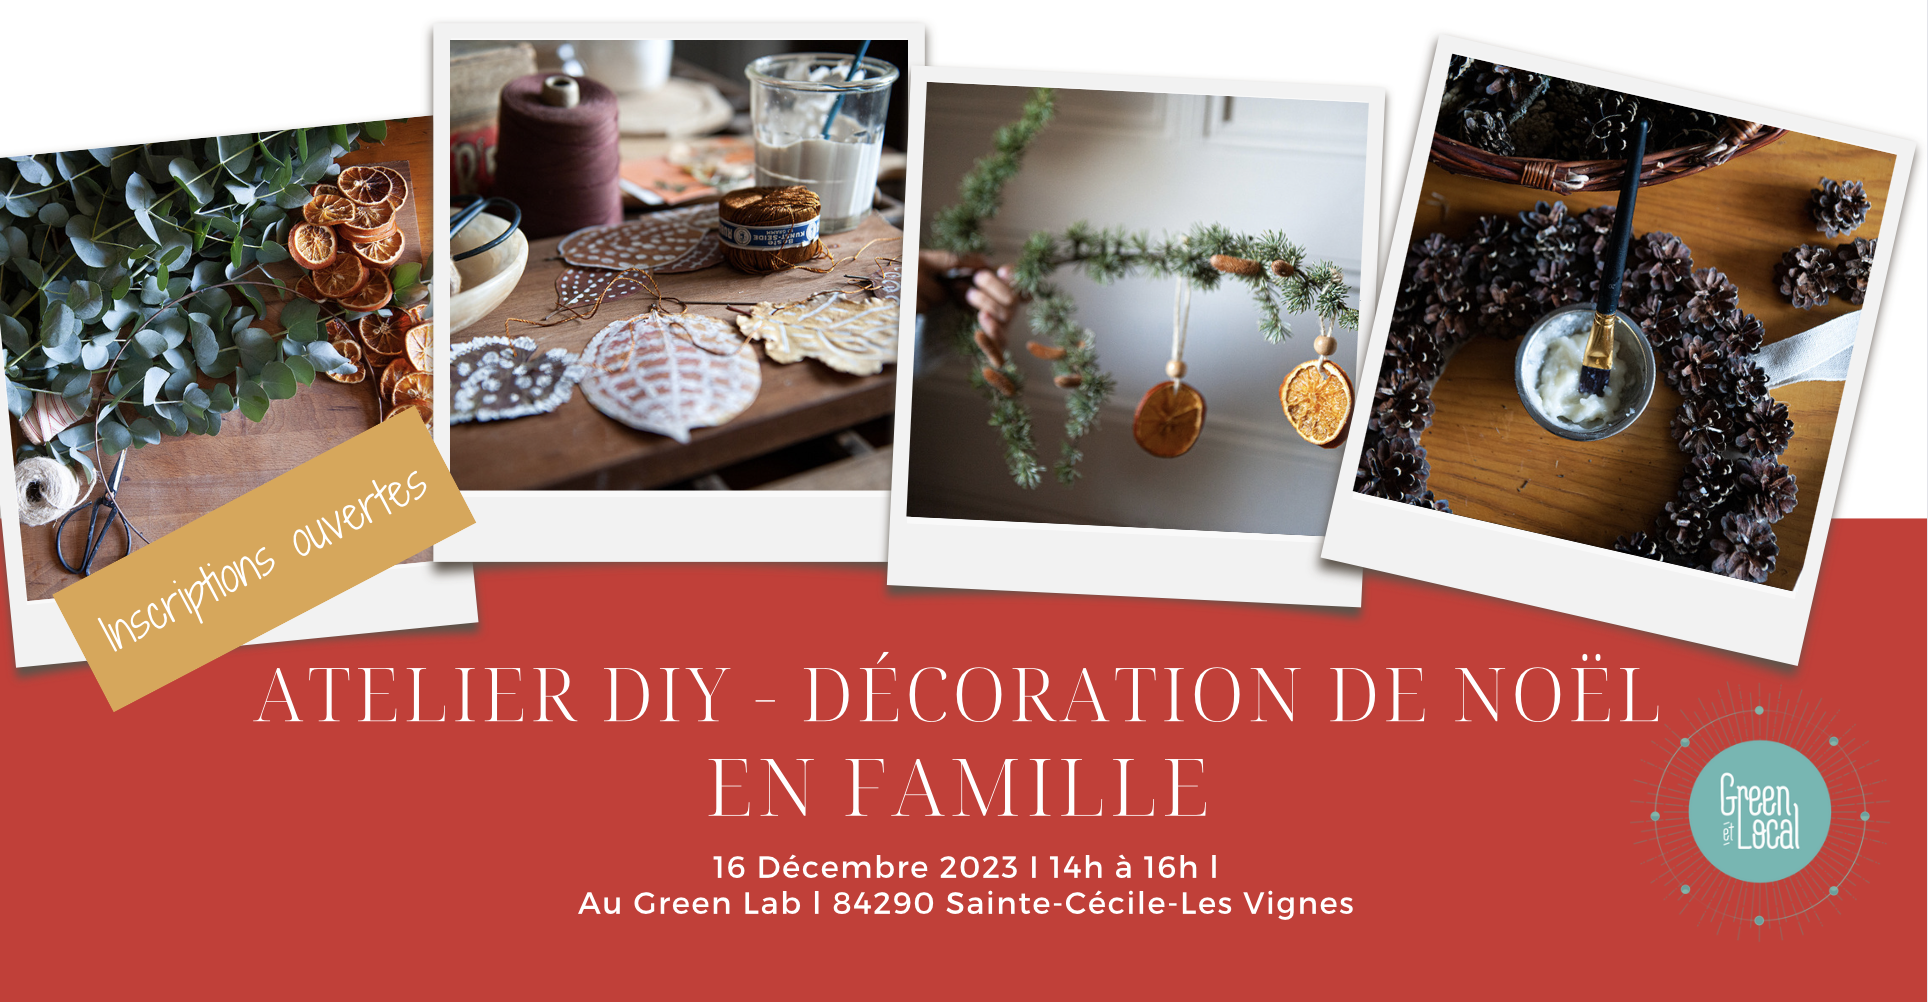 Atelier-decorations-de-noel-en-famille-cadeaux-de-Noel- ecolieu - laboratoire-ecologique-green-et-local-sainte-cecile-les-vignes-vaucluse